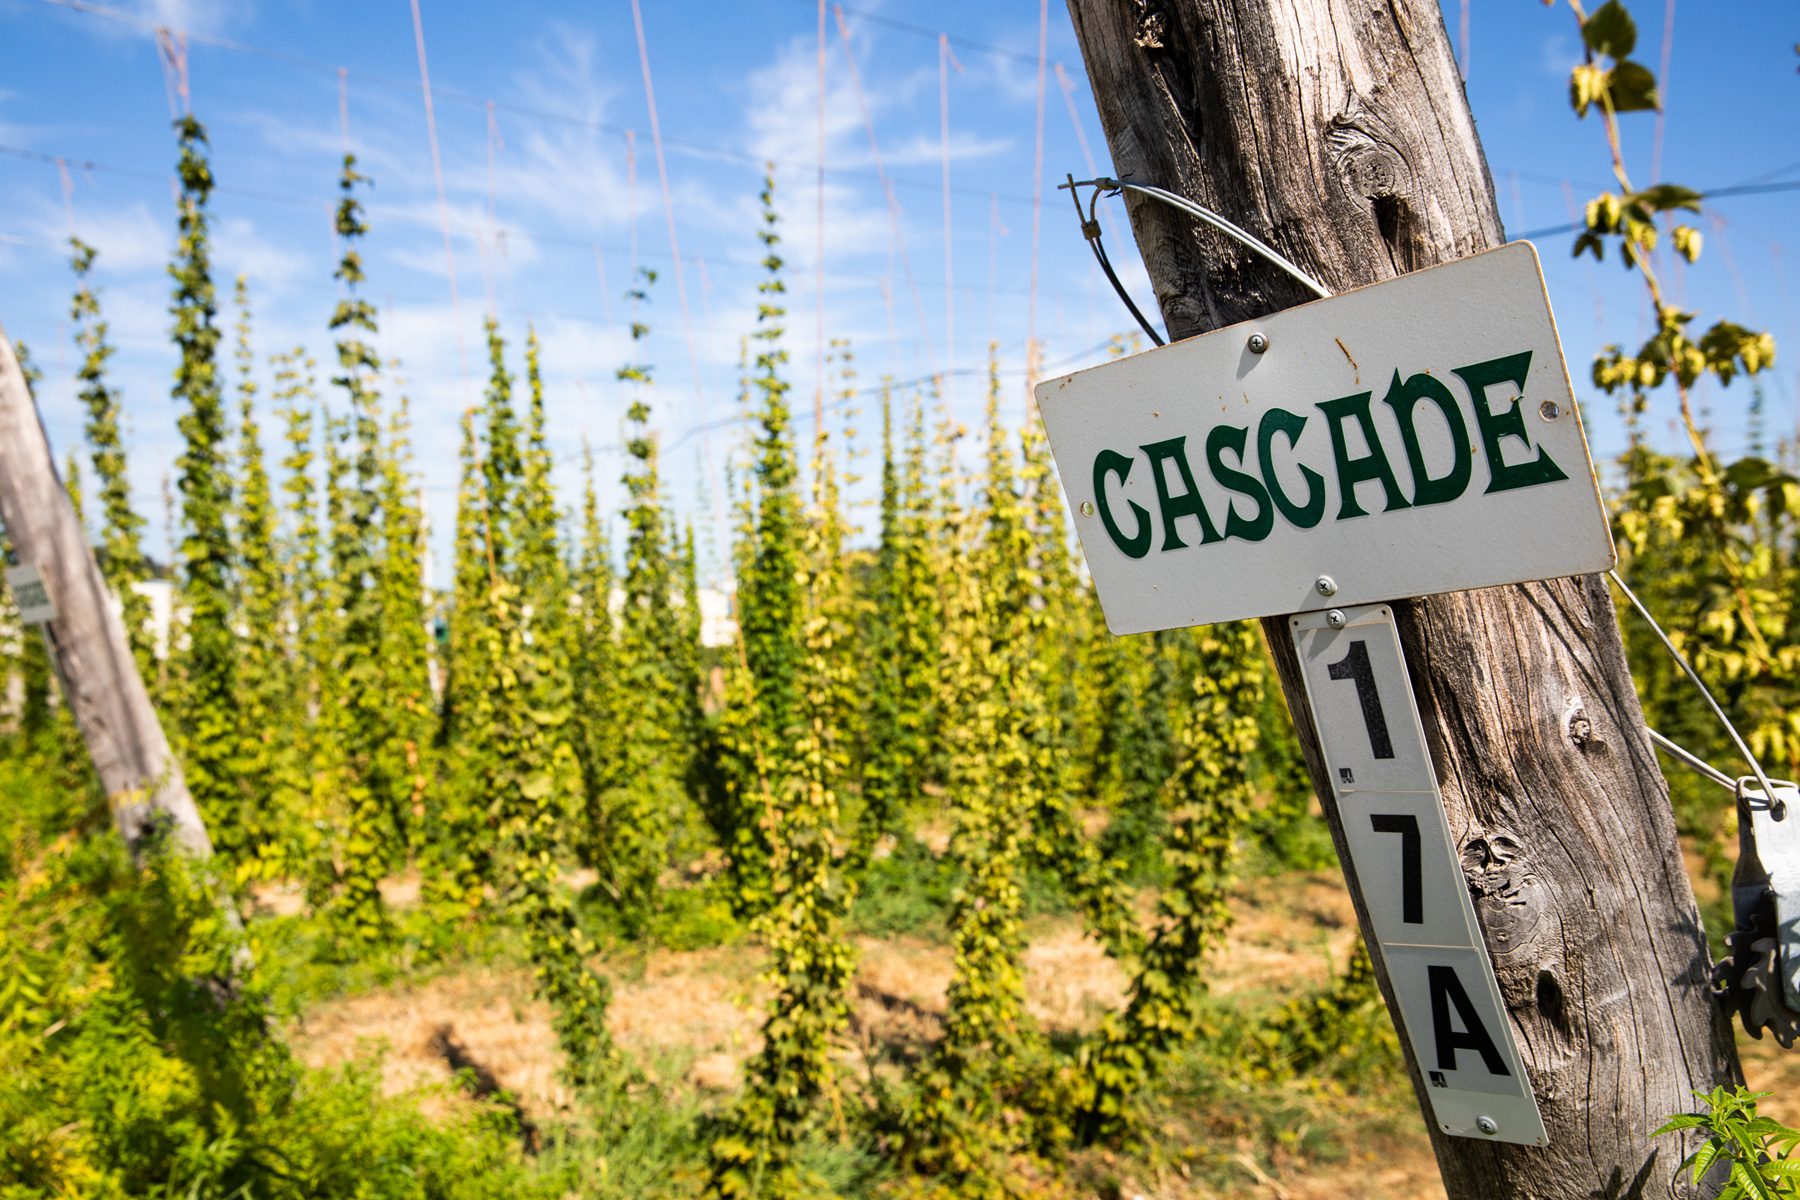 A sign demarking Cascade hops at the Sierra Nevada hop field